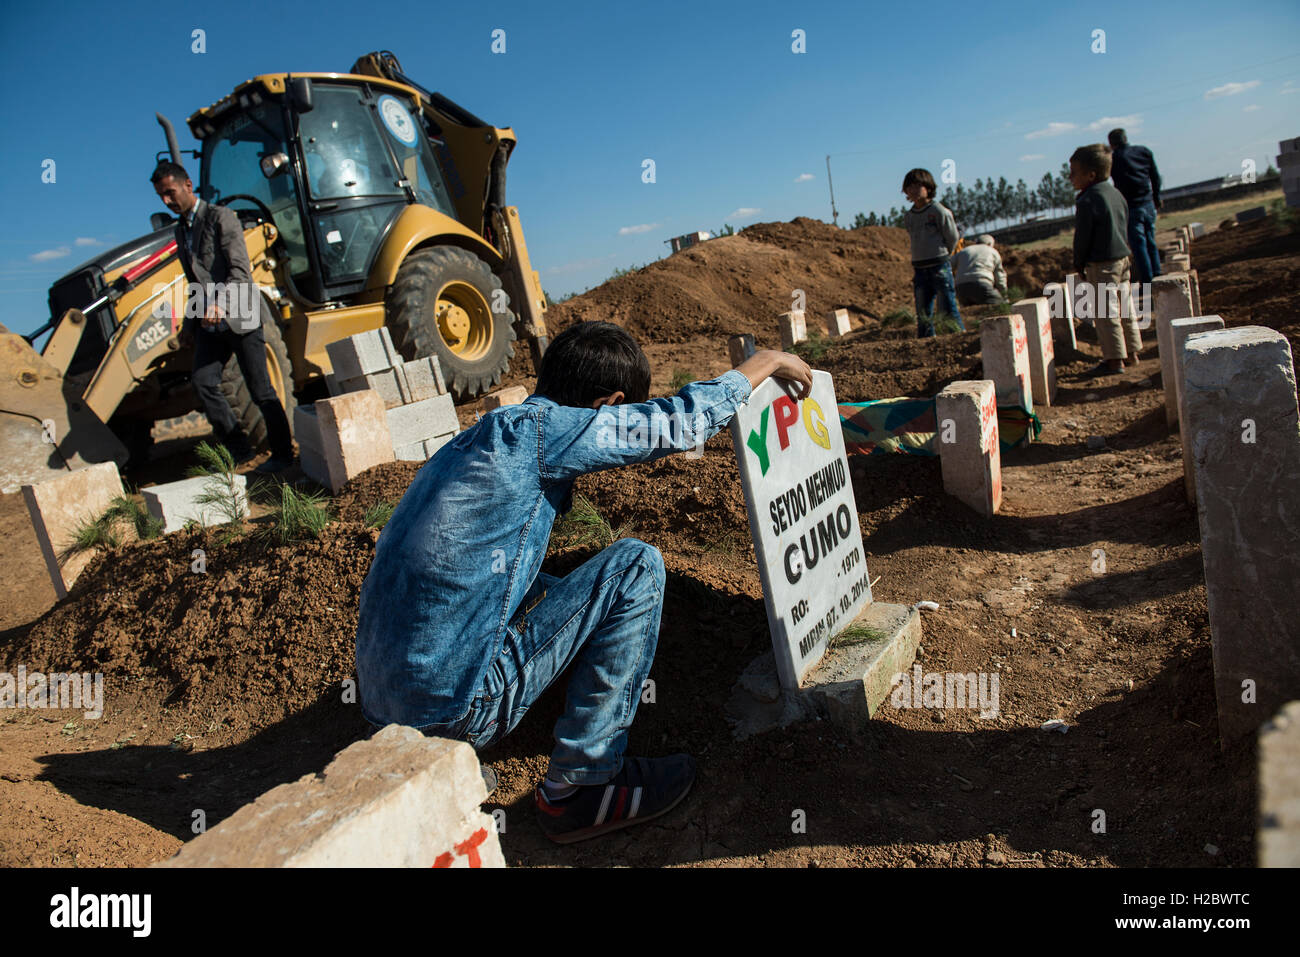 Un ragazzino curdo sorge accanto alla tomba di suo padre, morto nell'assedio della città siriana di Kobani, durante il combattimento contro uno Stato islamico forze, presso la città turca di Suruc, vicino al confine Turkish-Syrian. Migliaia di curdi che erano stati costretti ad abbandonare la città siriana di Kobani, che è sotto assedio da parte di uno Stato islamico forze. La maggior parte di loro vivono in campi per rifugiati nella città turca di Suruc. Foto Stock